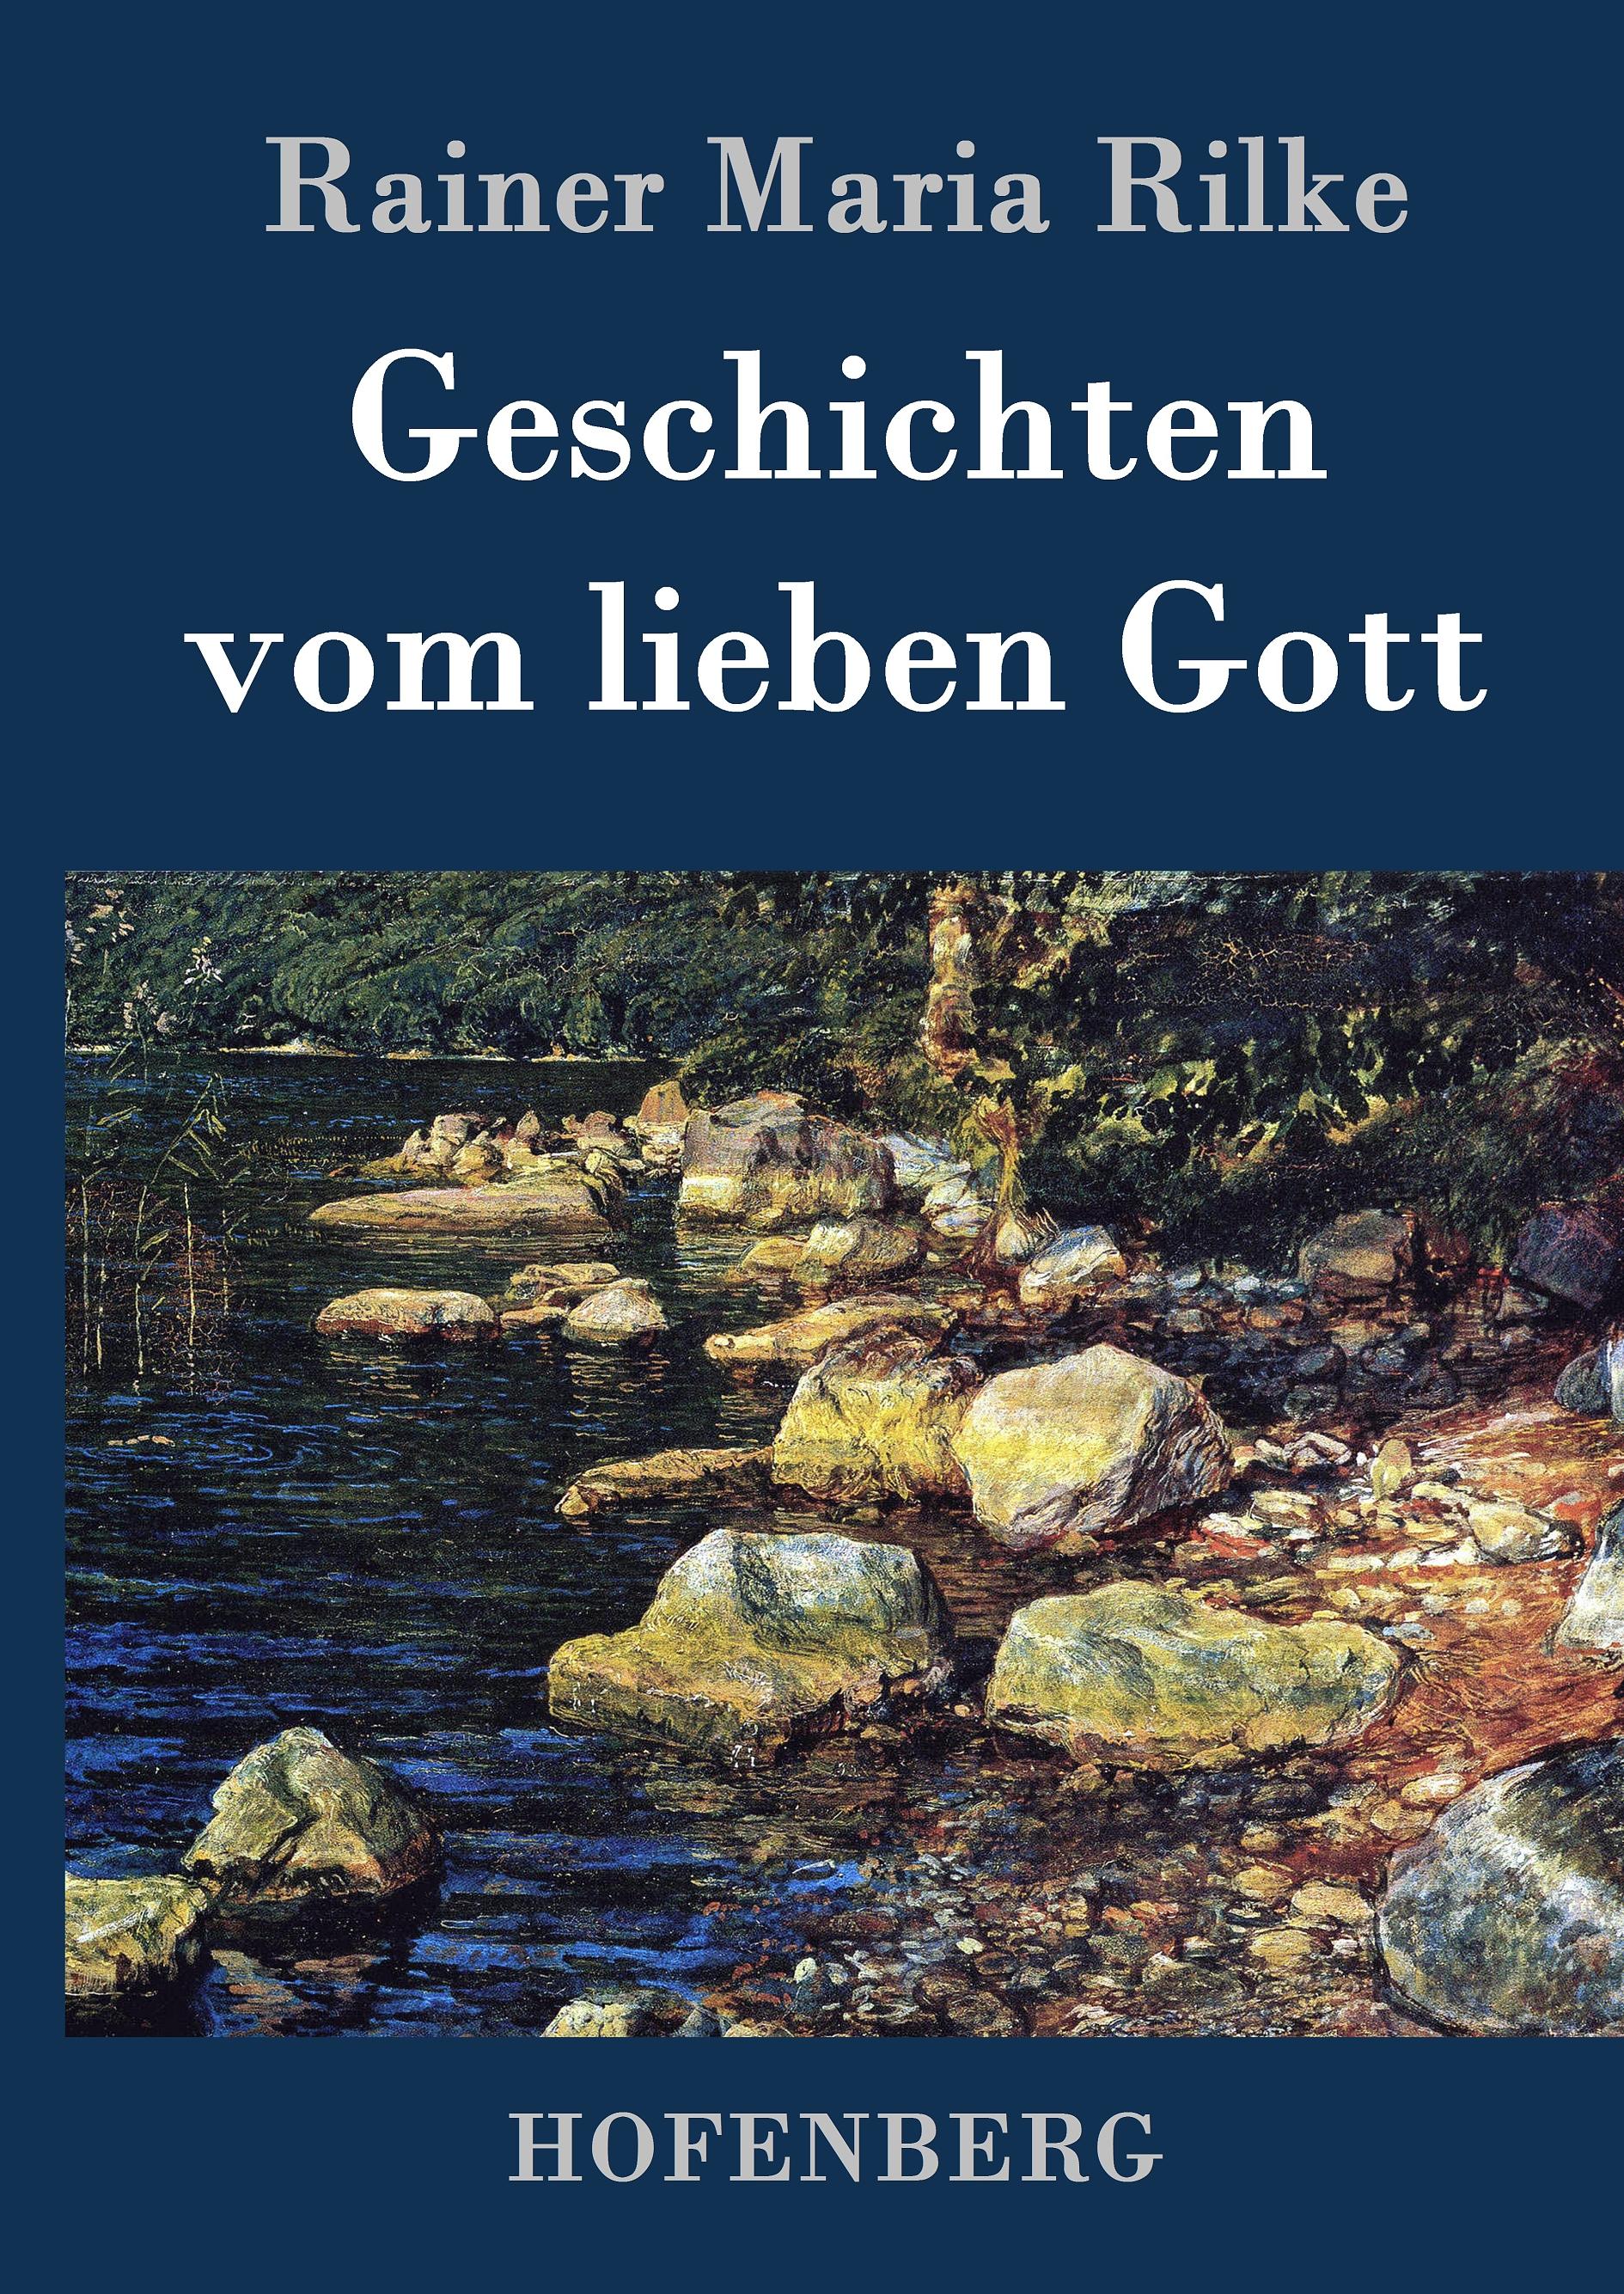 Geschichten vom lieben Gott - Rilke, Rainer Maria